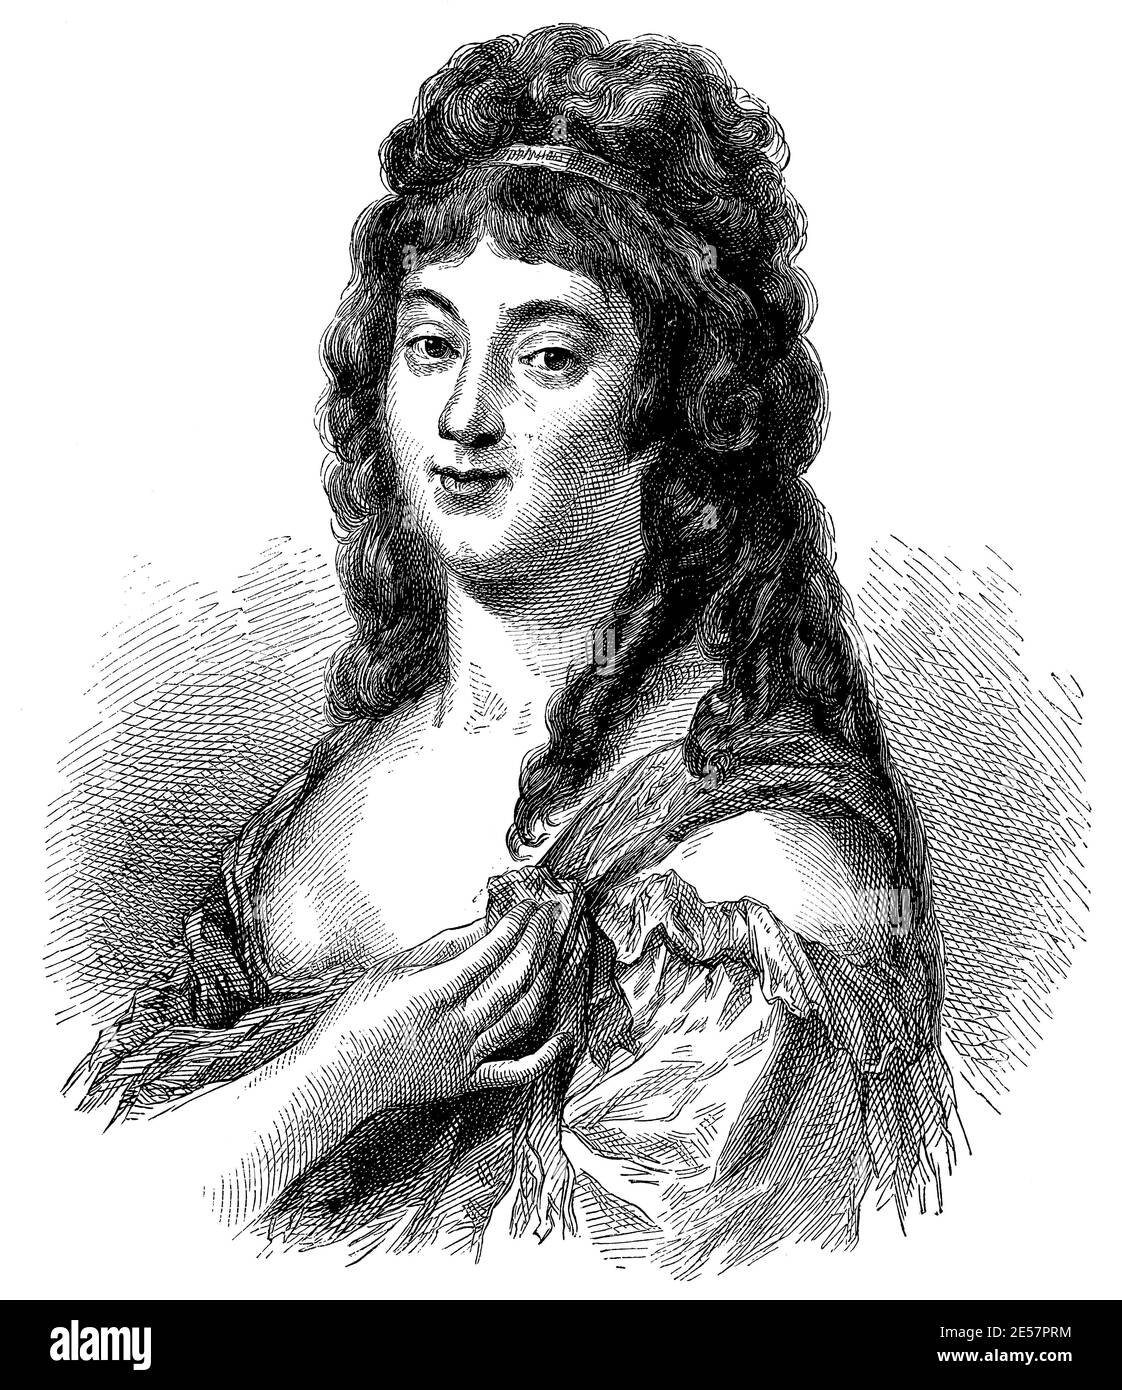 Portrait de Madame Roland (née Marie-Jeanne Phlipon) - une révolutionnaire française, salonnière et écrivain. Illustration du 19e siècle. Allemagne. Arrière-plan blanc. Banque D'Images